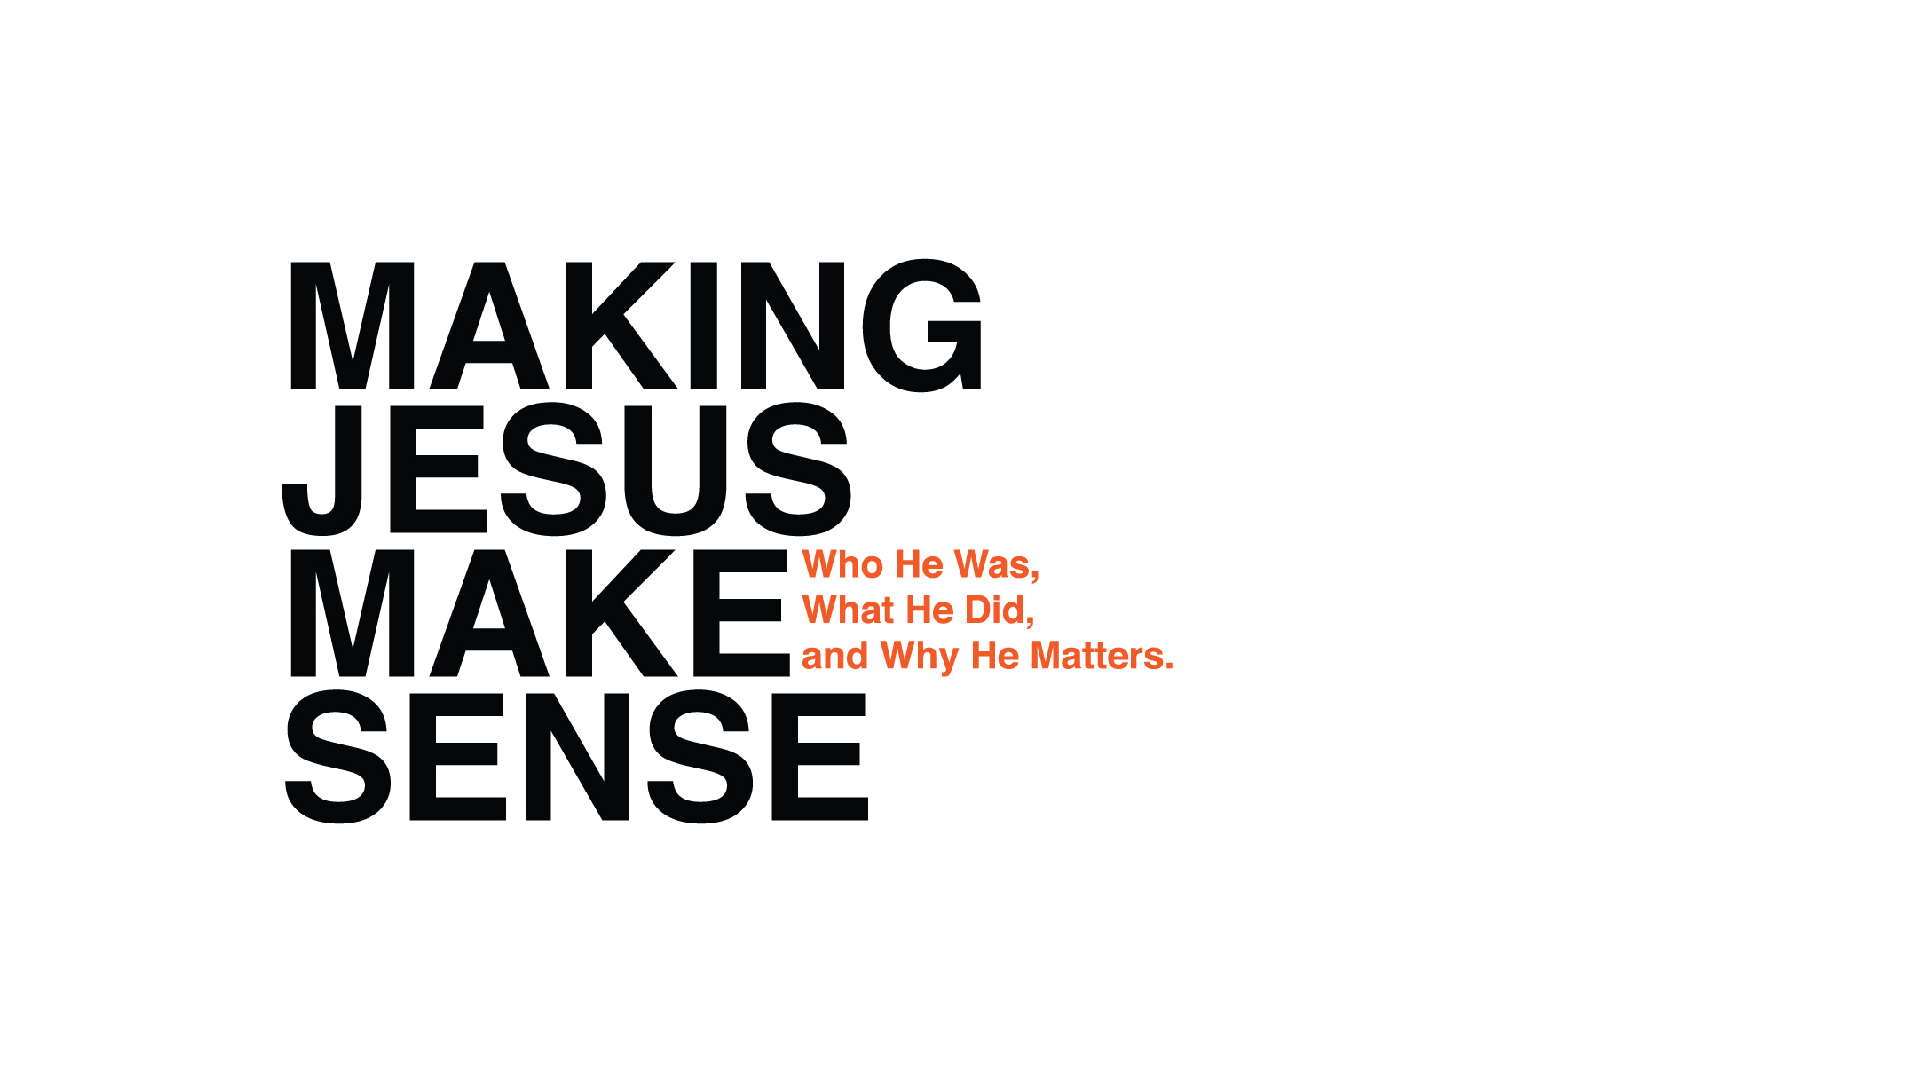 Making Jesus Make Sense